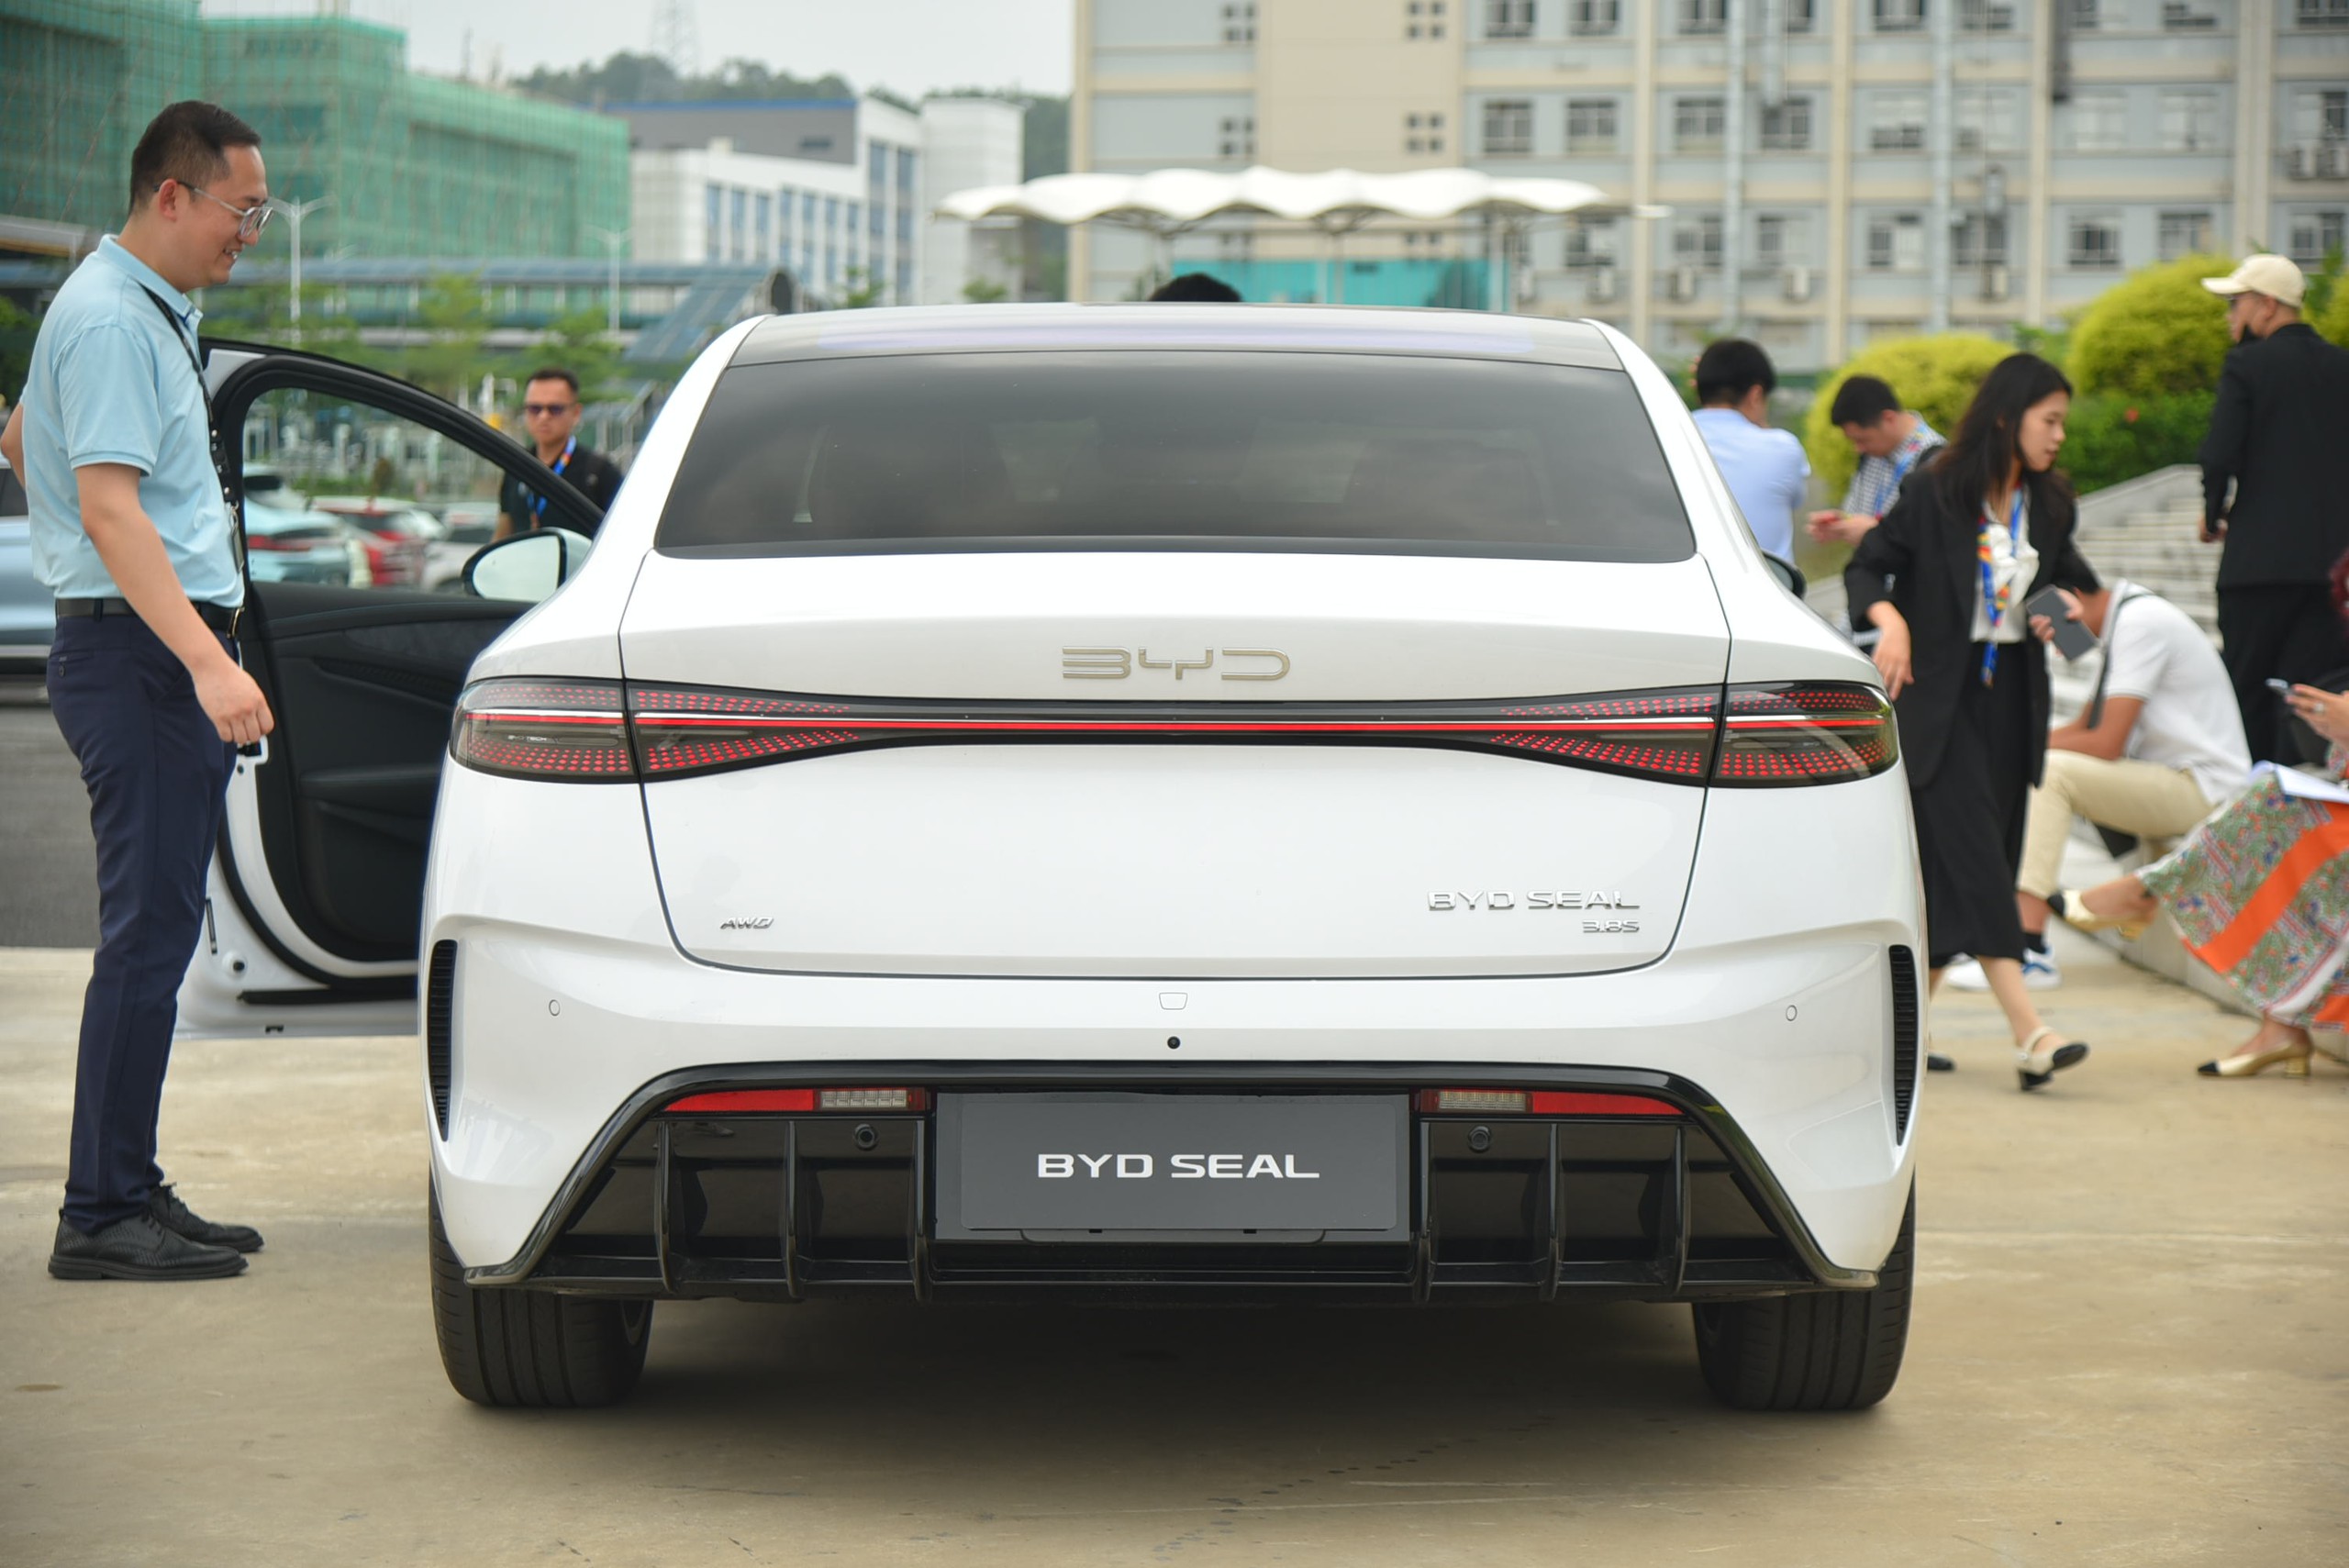 BYD Seal sắp về Việt Nam, bộ ảnh thực tế này cho thấy mẫu sedan ngang cỡ Camry này có gì ''hot'' để chờ đợi - ảnh 19